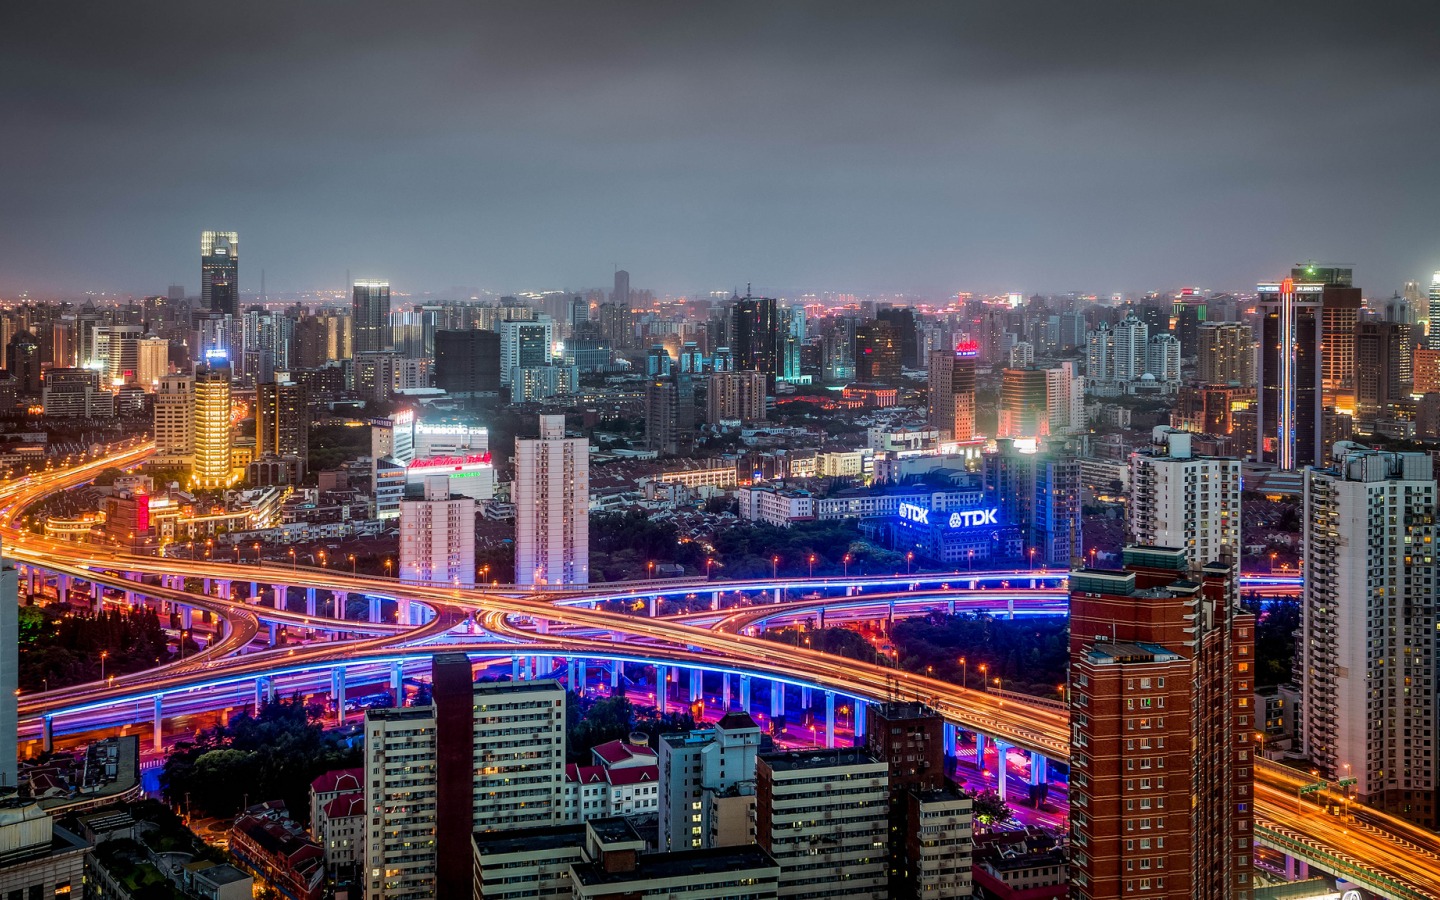 上海美丽夜景图片桌面壁纸